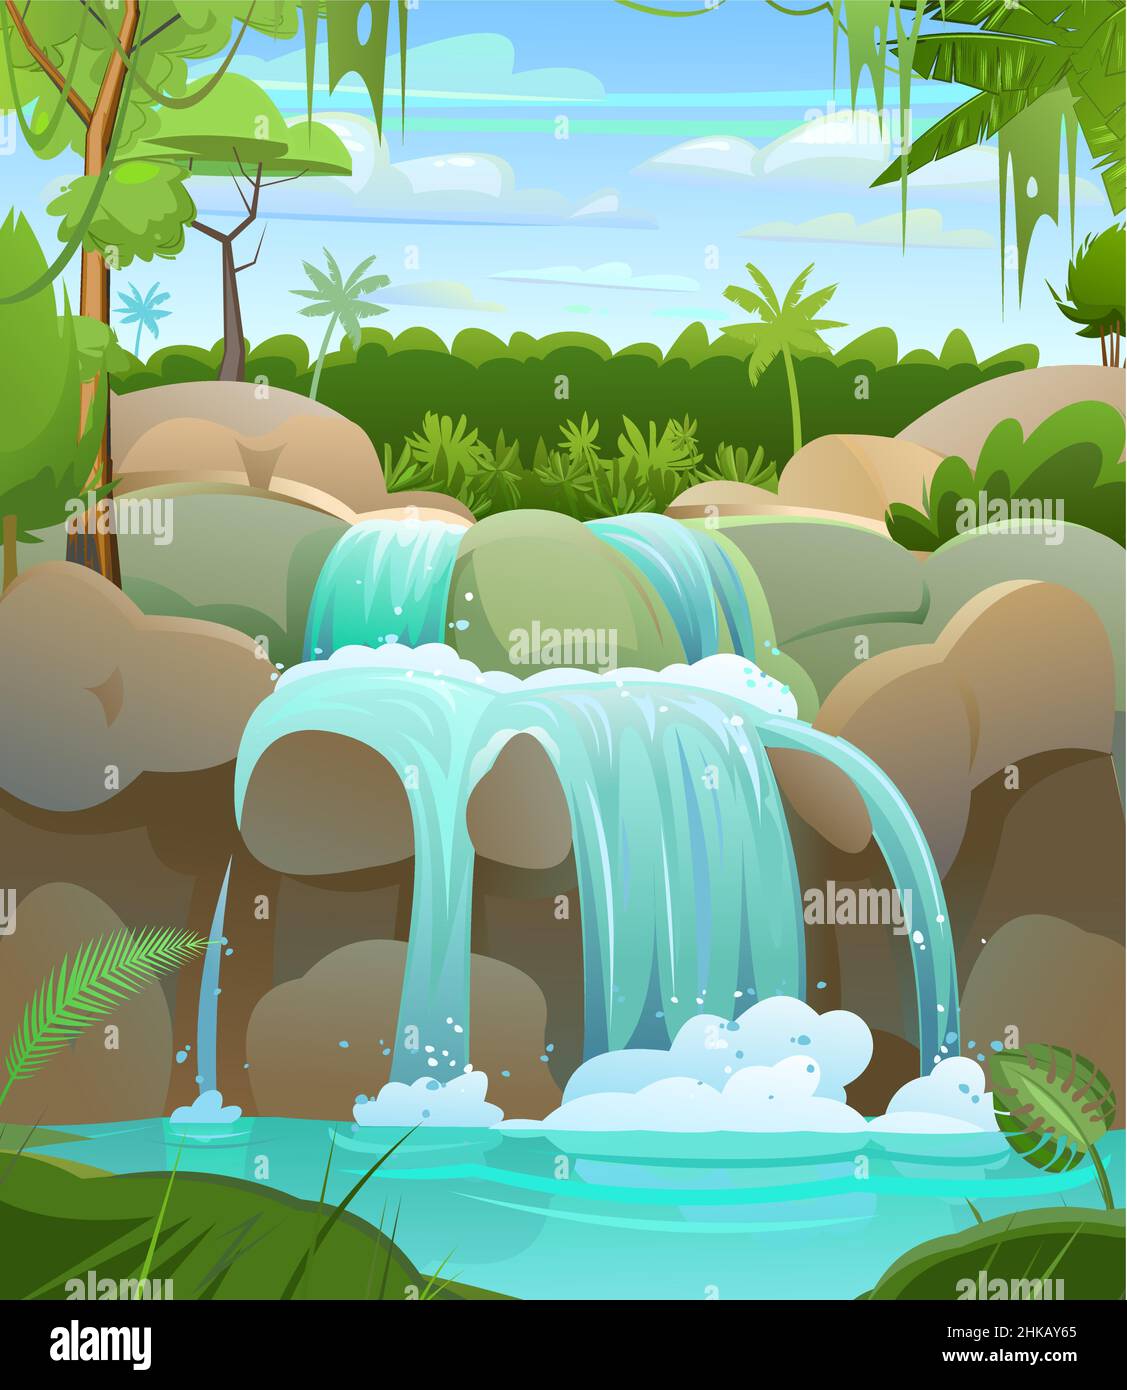 Tropische Landschaft mit Wasserfall zwischen Felsen. Kaskade schimmert nach unten. Palmen und Regenwald in der Ferne. Fließendes Wasser. Cooler Cartoon-Style. Vektor Stock Vektor